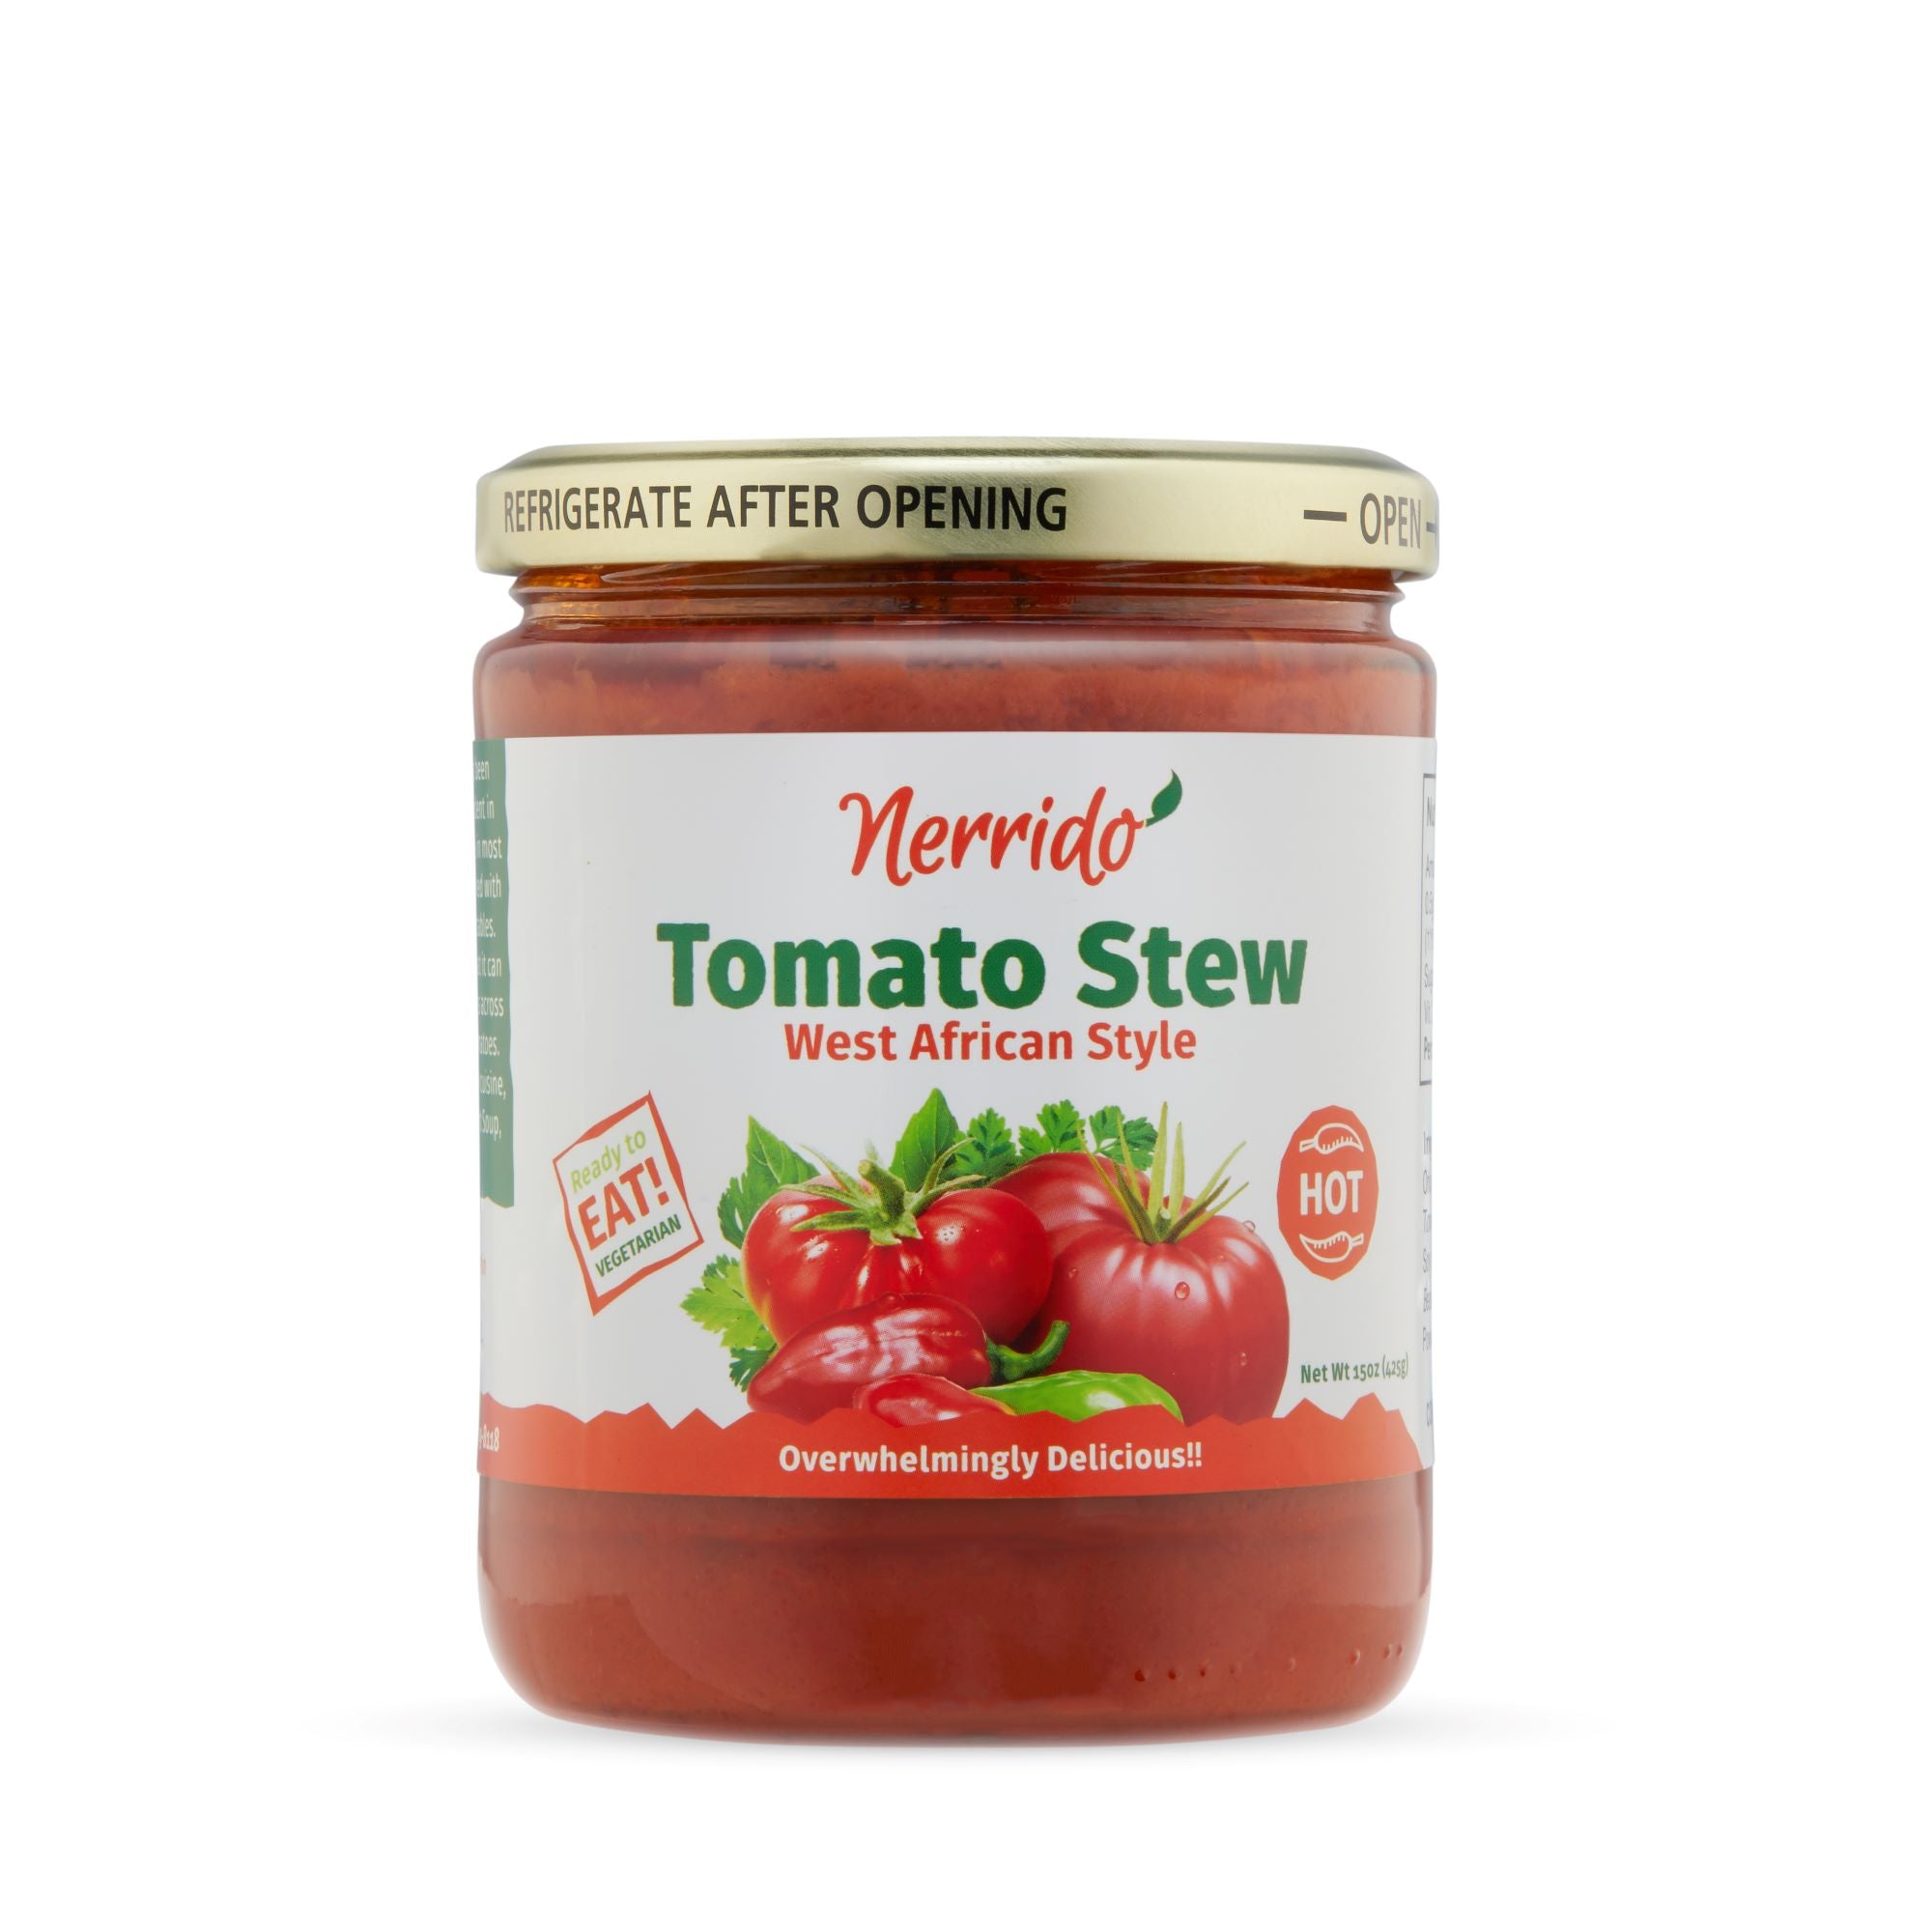 Nerrido Tomato Stew